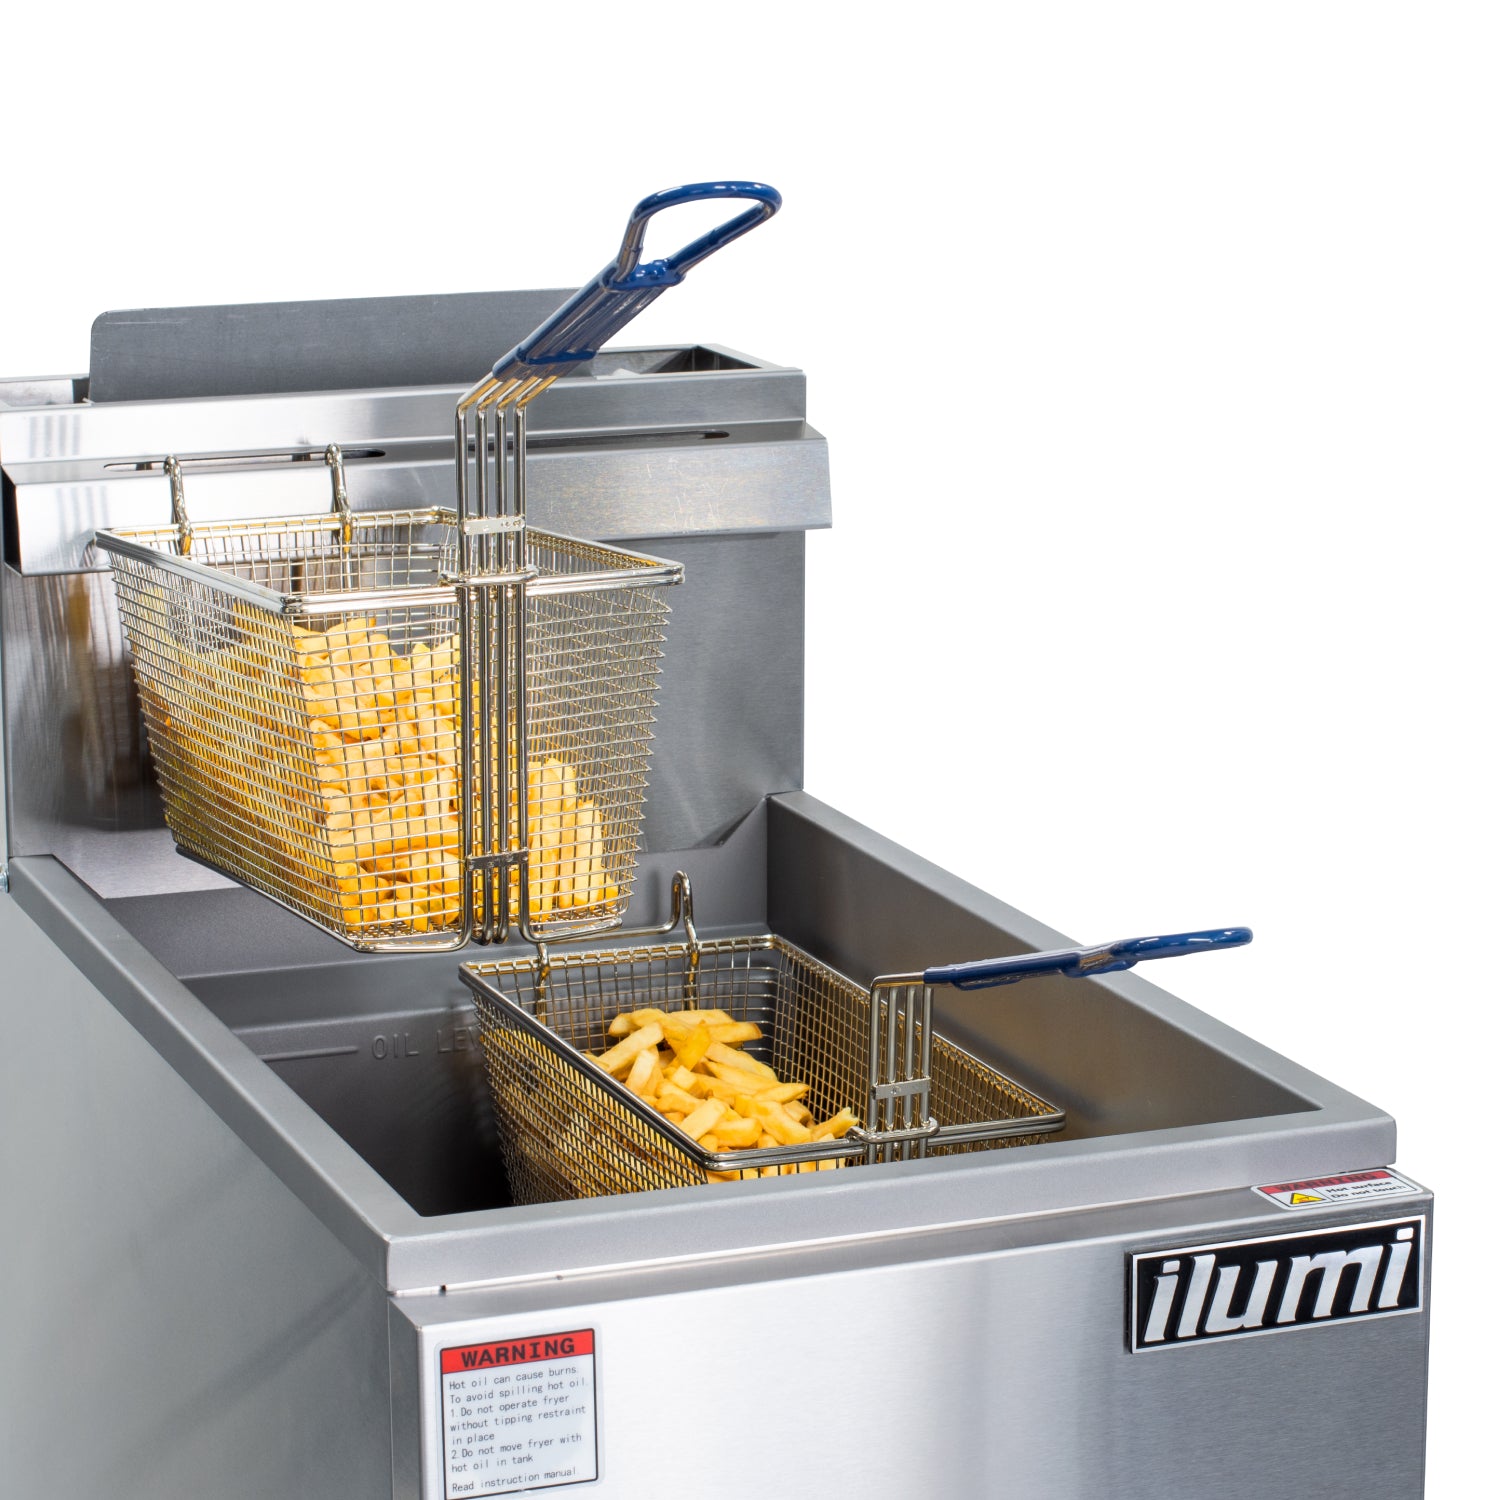 Congelador vertical con 6 cajones separadores de 280 litros – Fricanox